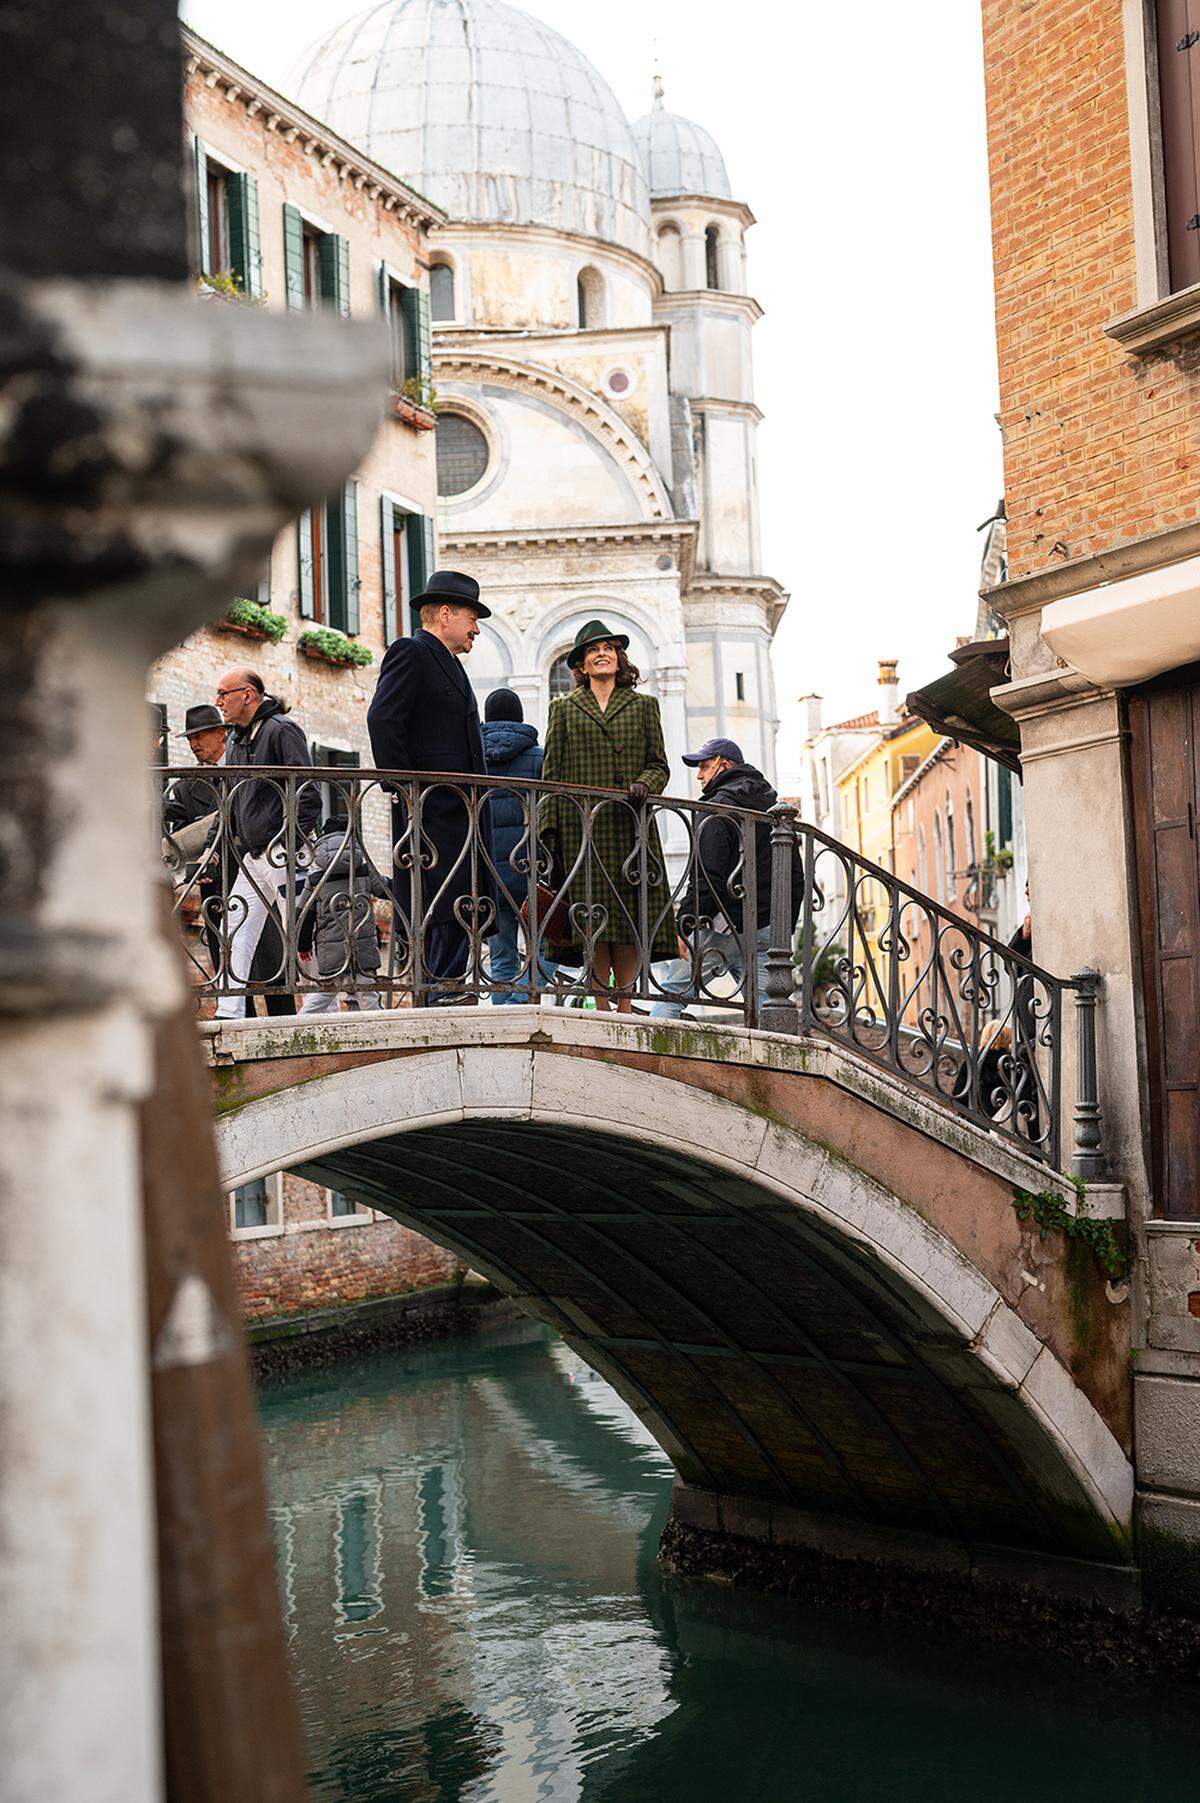 Ponte dei Pugni, die Brücke der Fäuste, gehört ebenfalls zu den berühmtesten Brücken Venedigs. 